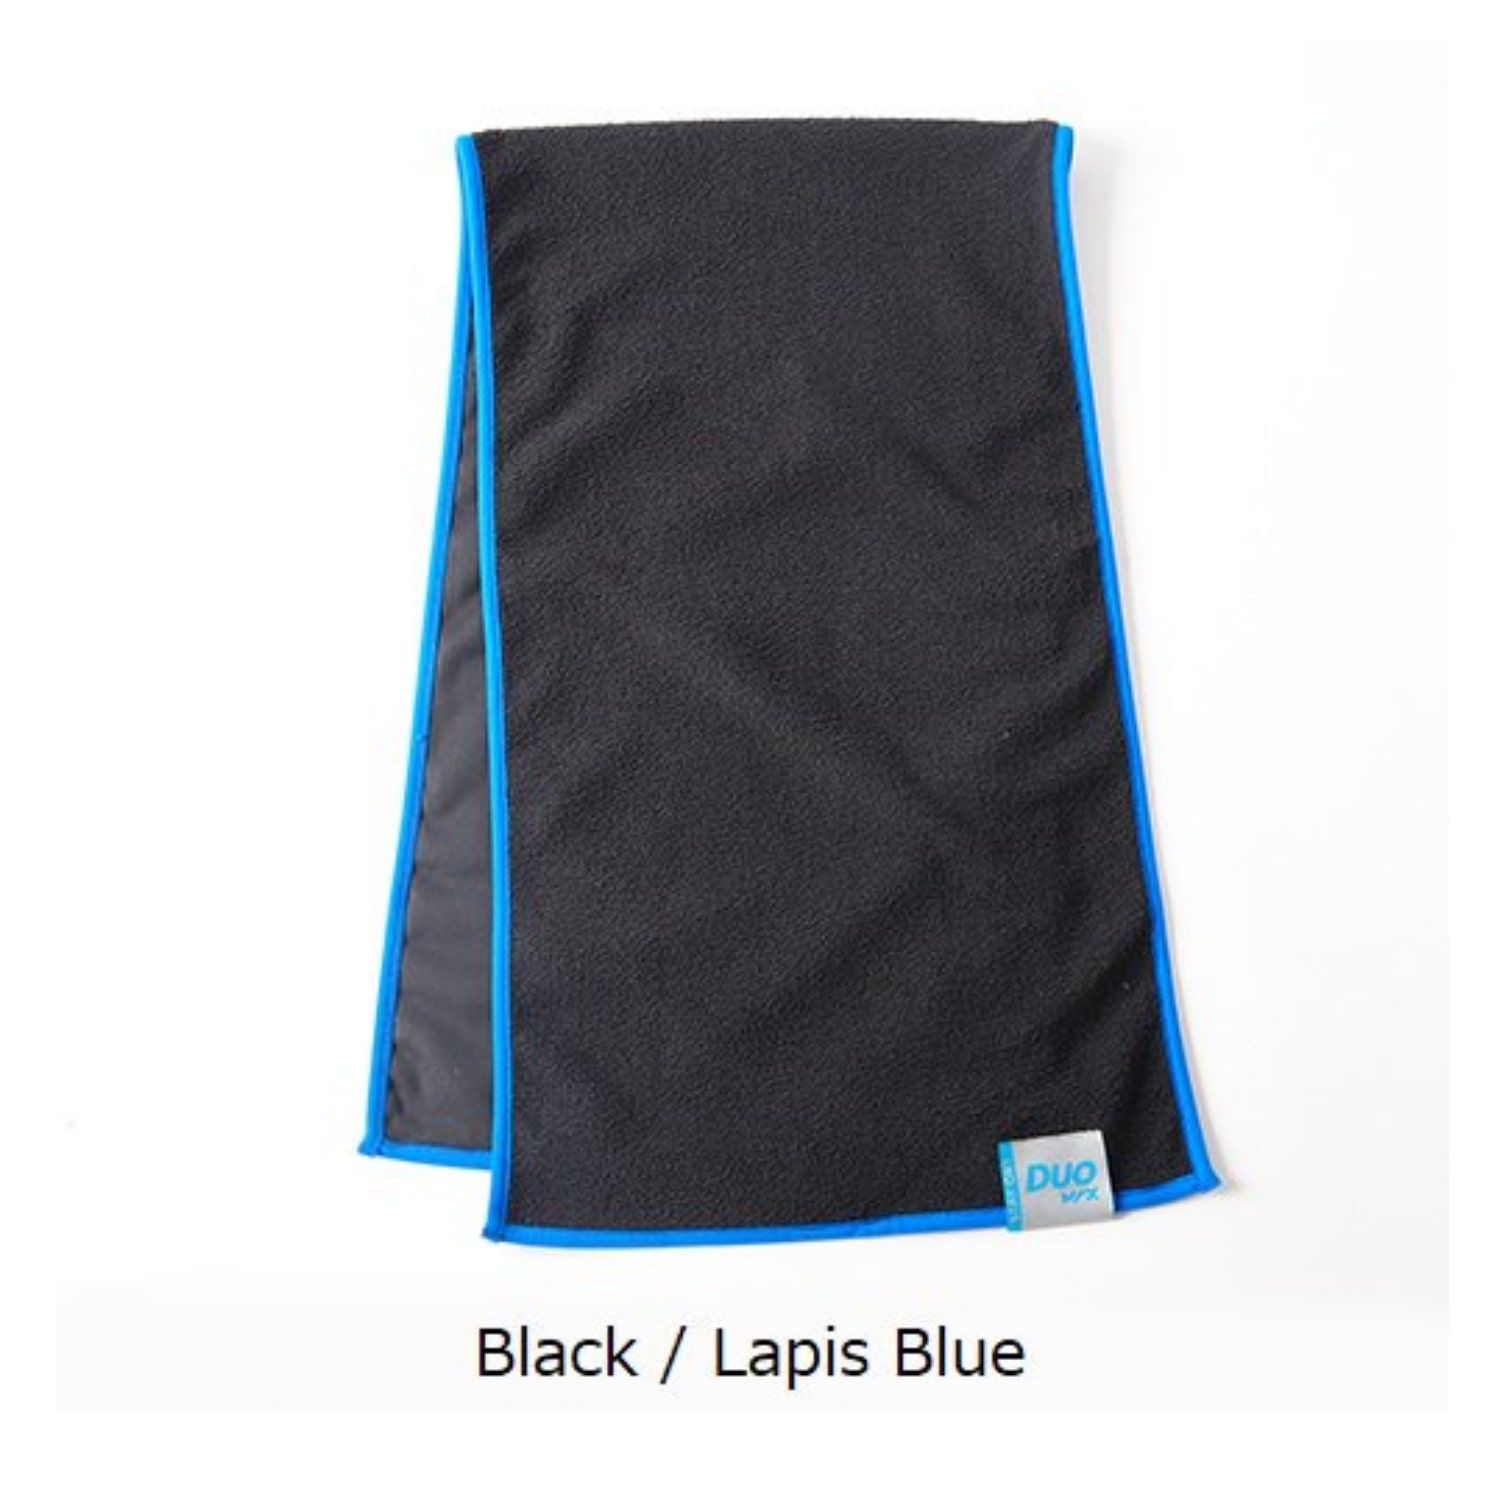 Black/Lapis Blue